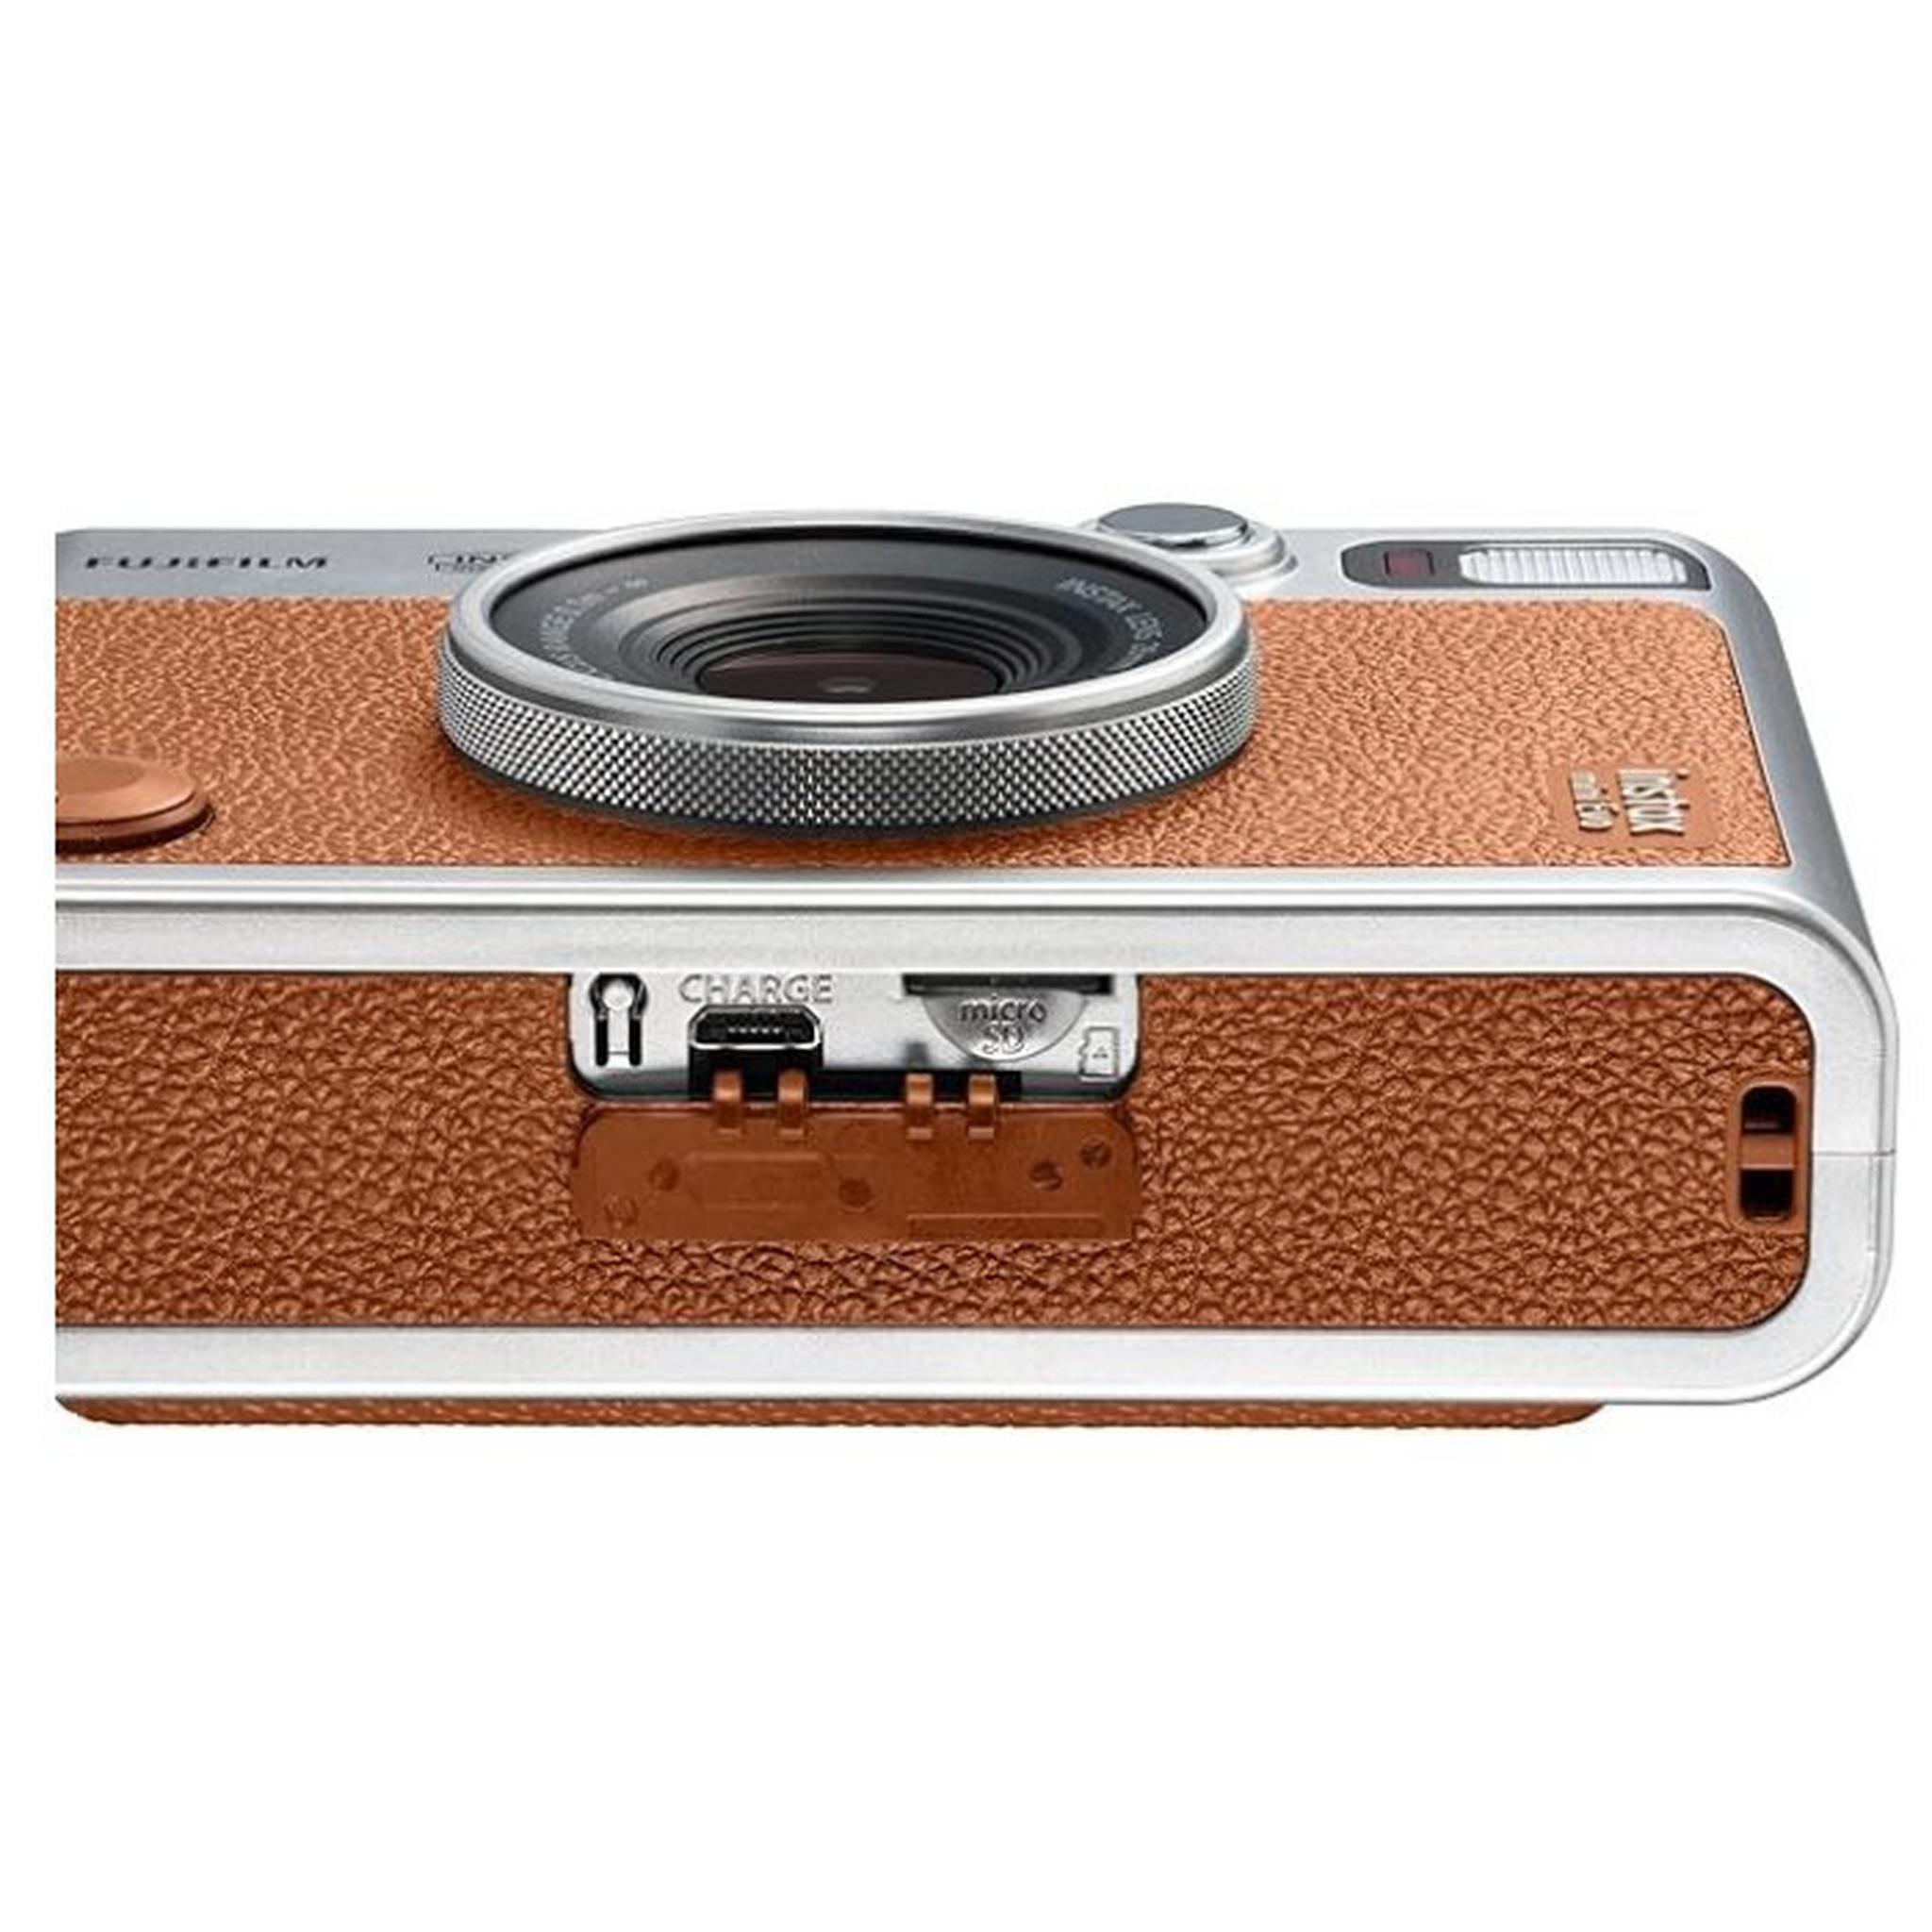 Fujifilm Instax Mini Evo Camera, 28mm, USB Type C Port – Brown